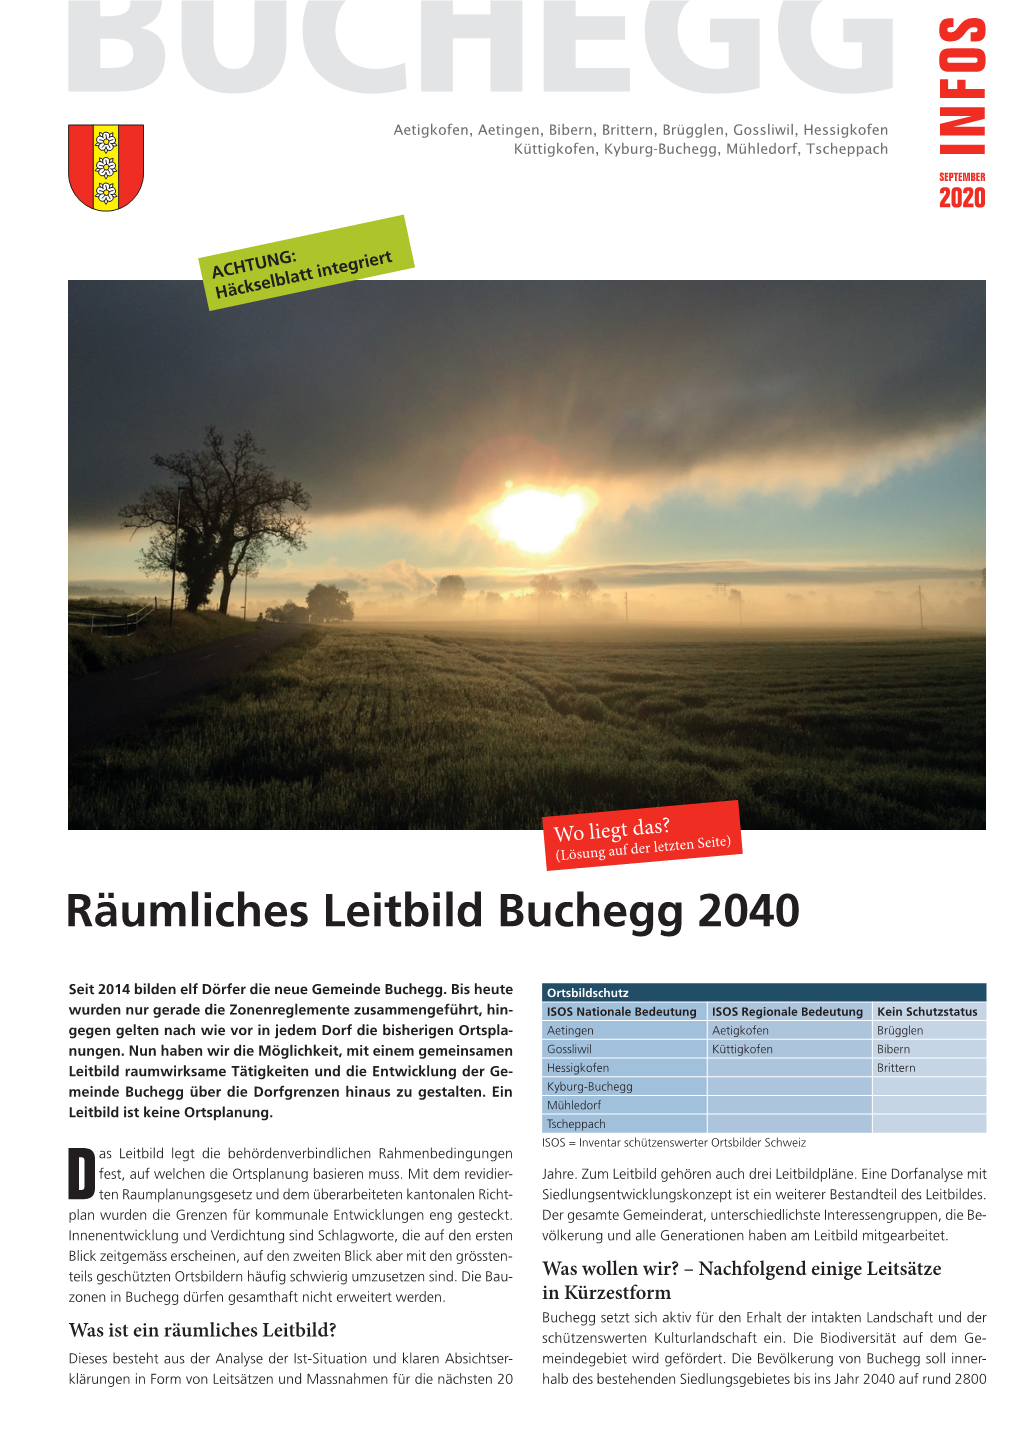 Info Buchegg September 2020